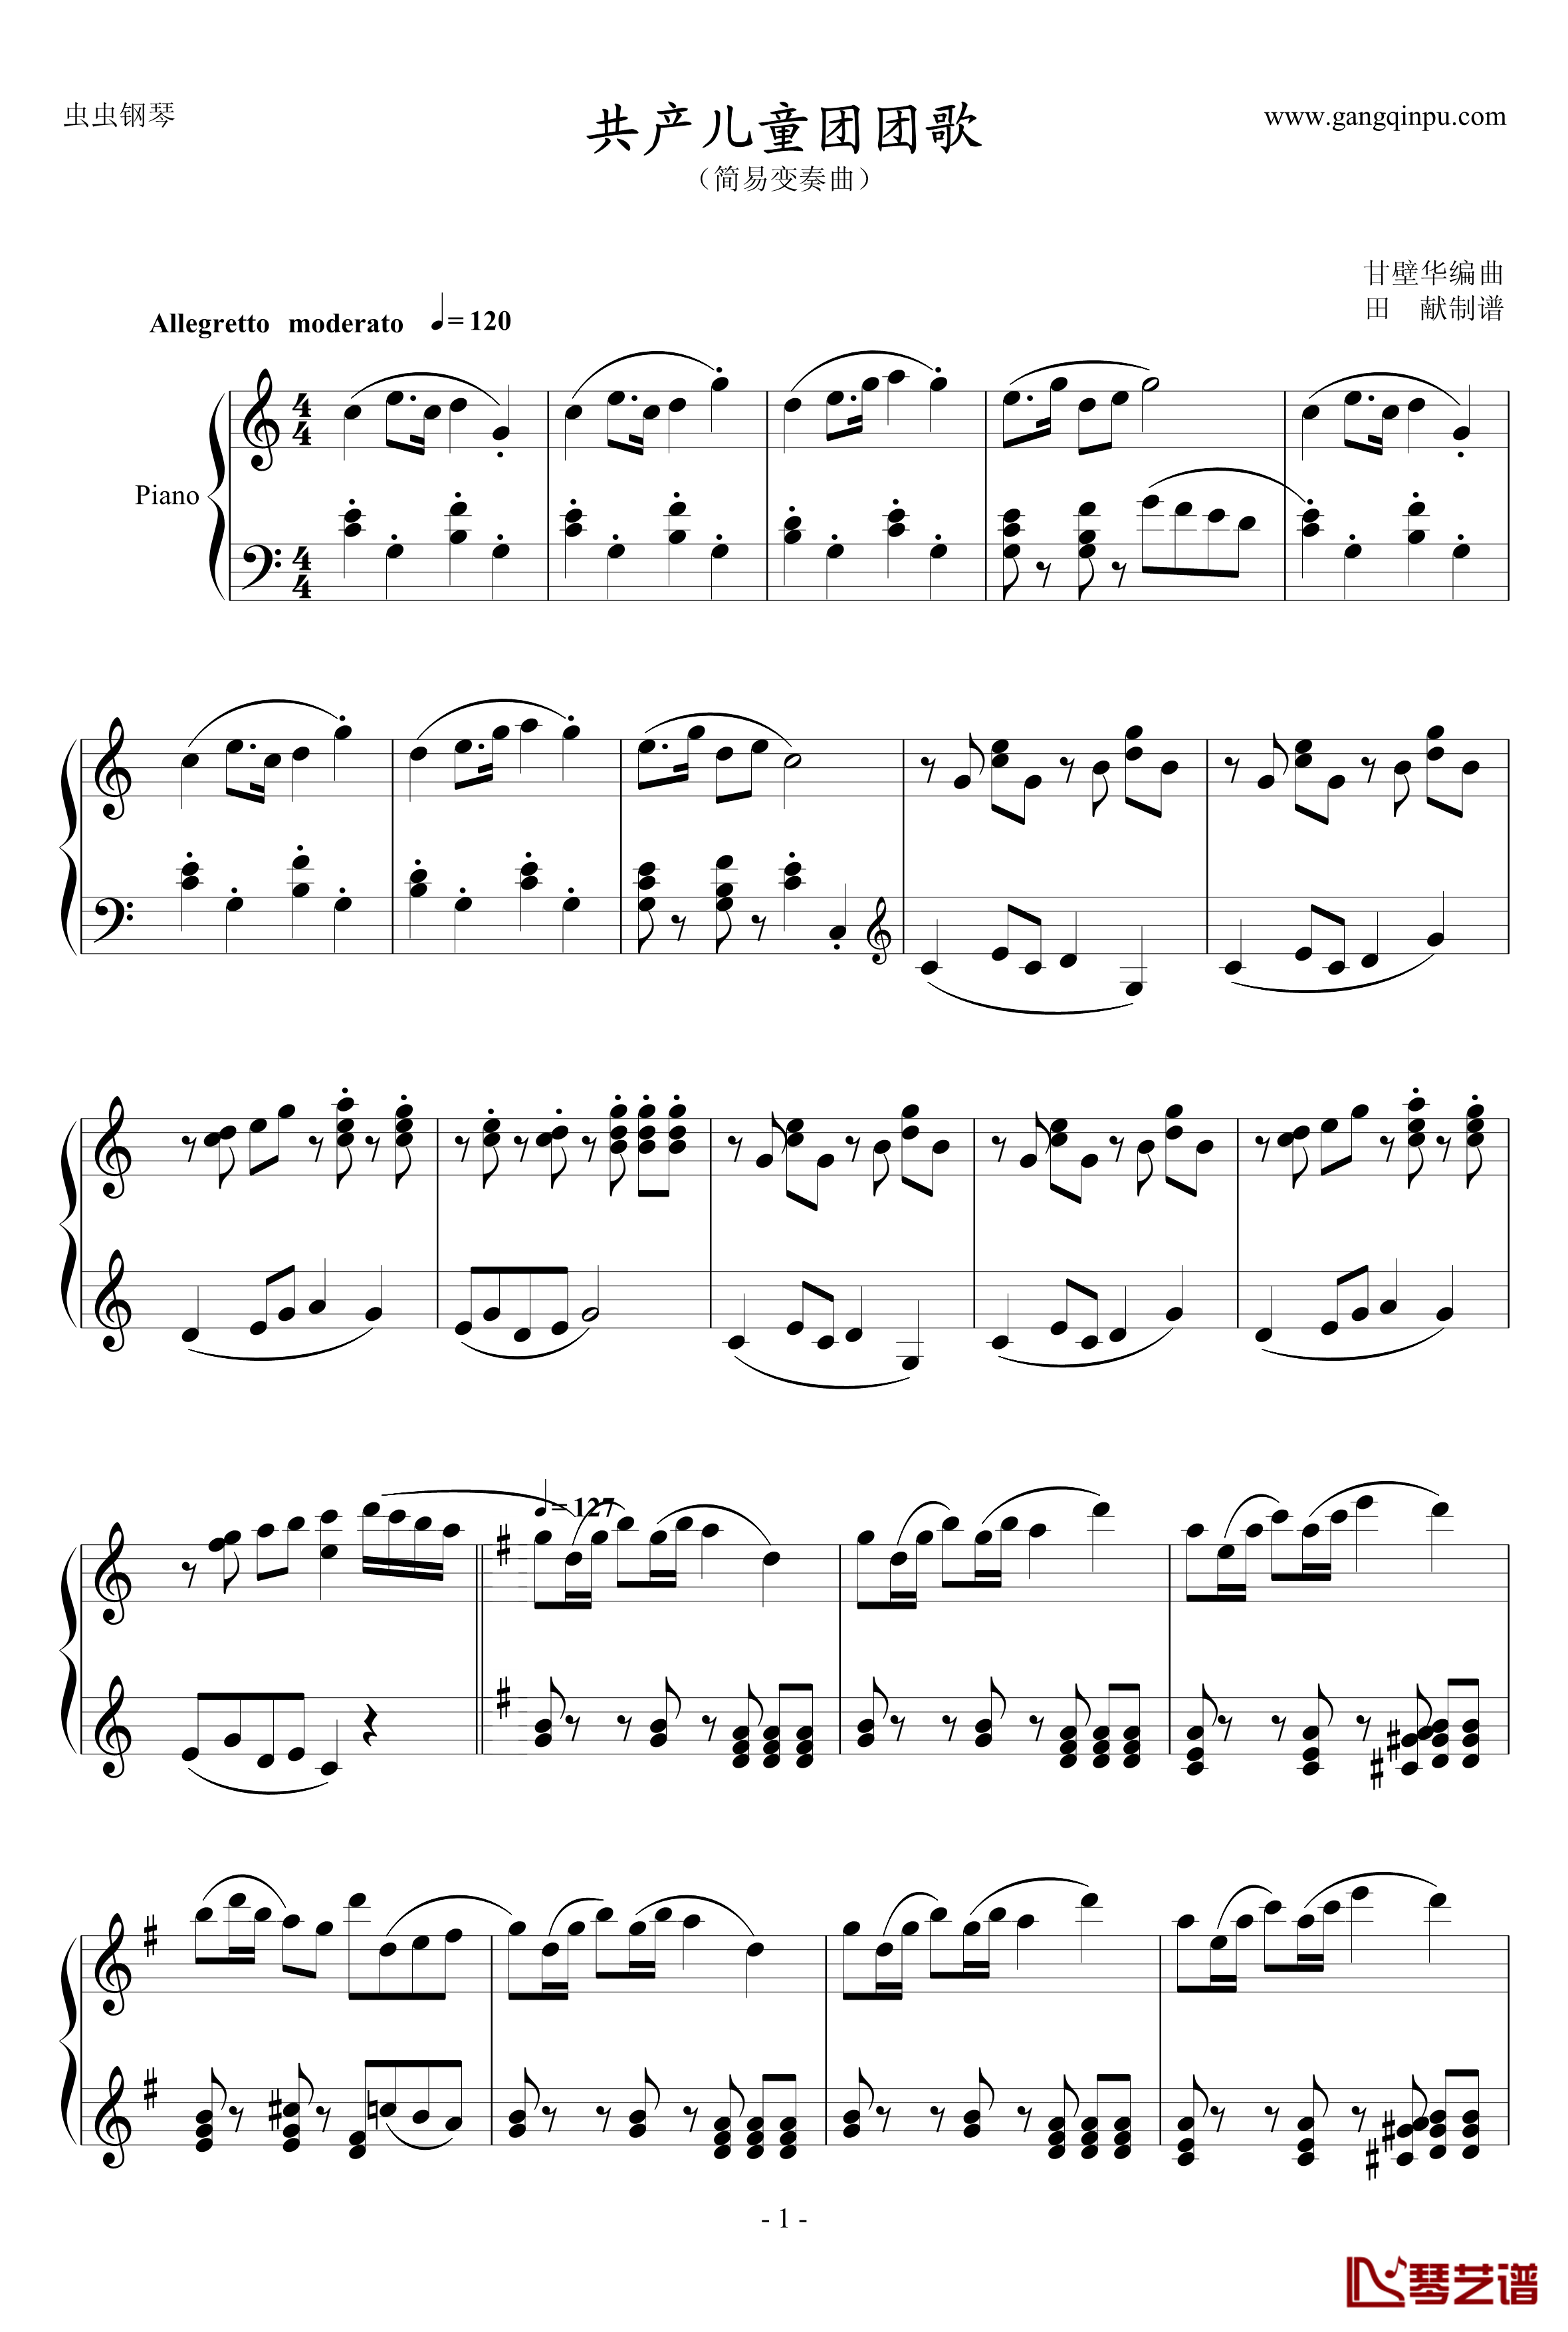 共产儿童团歌钢琴谱-简易变奏曲-甘壁华1